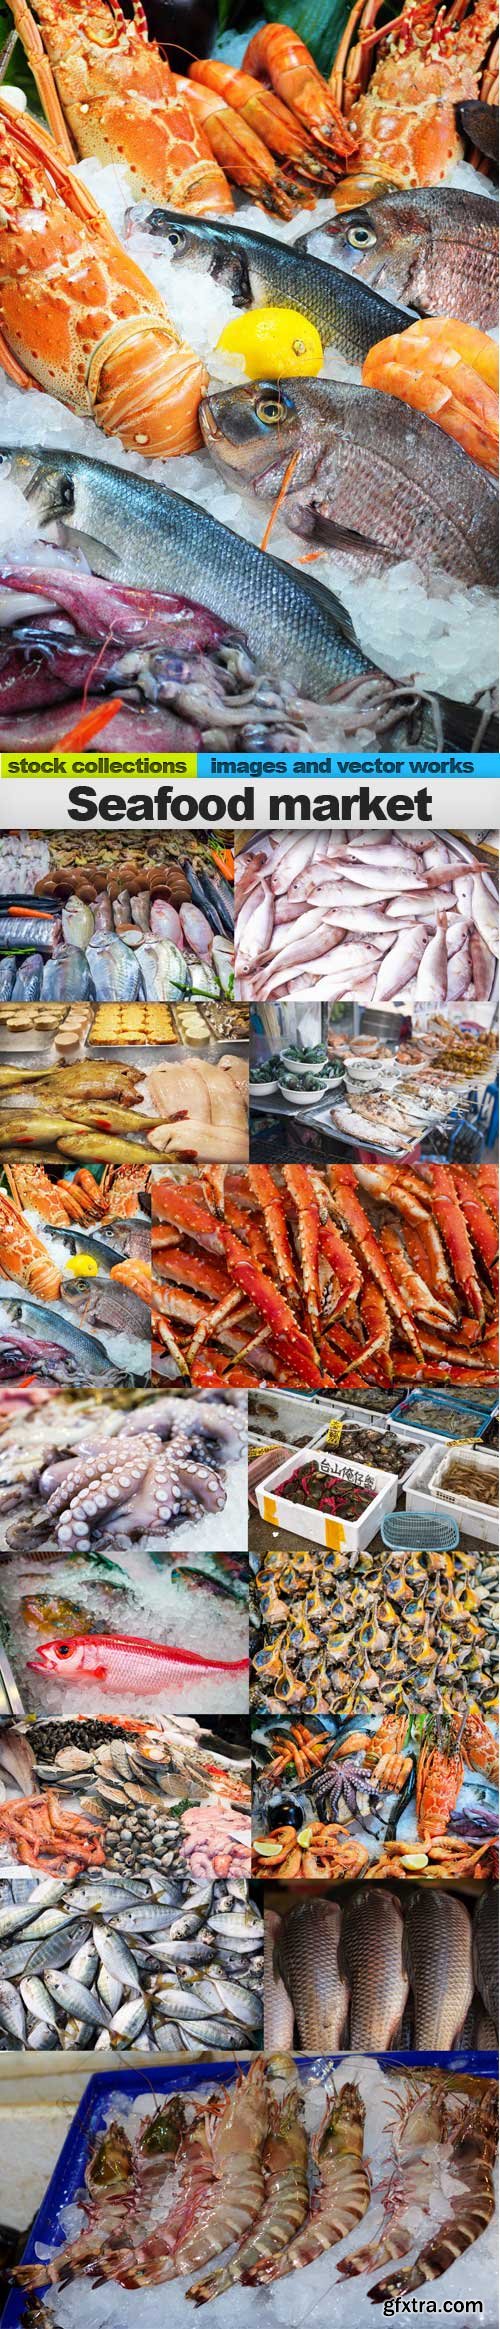 Seafood market, 15 x UHQ JPEG